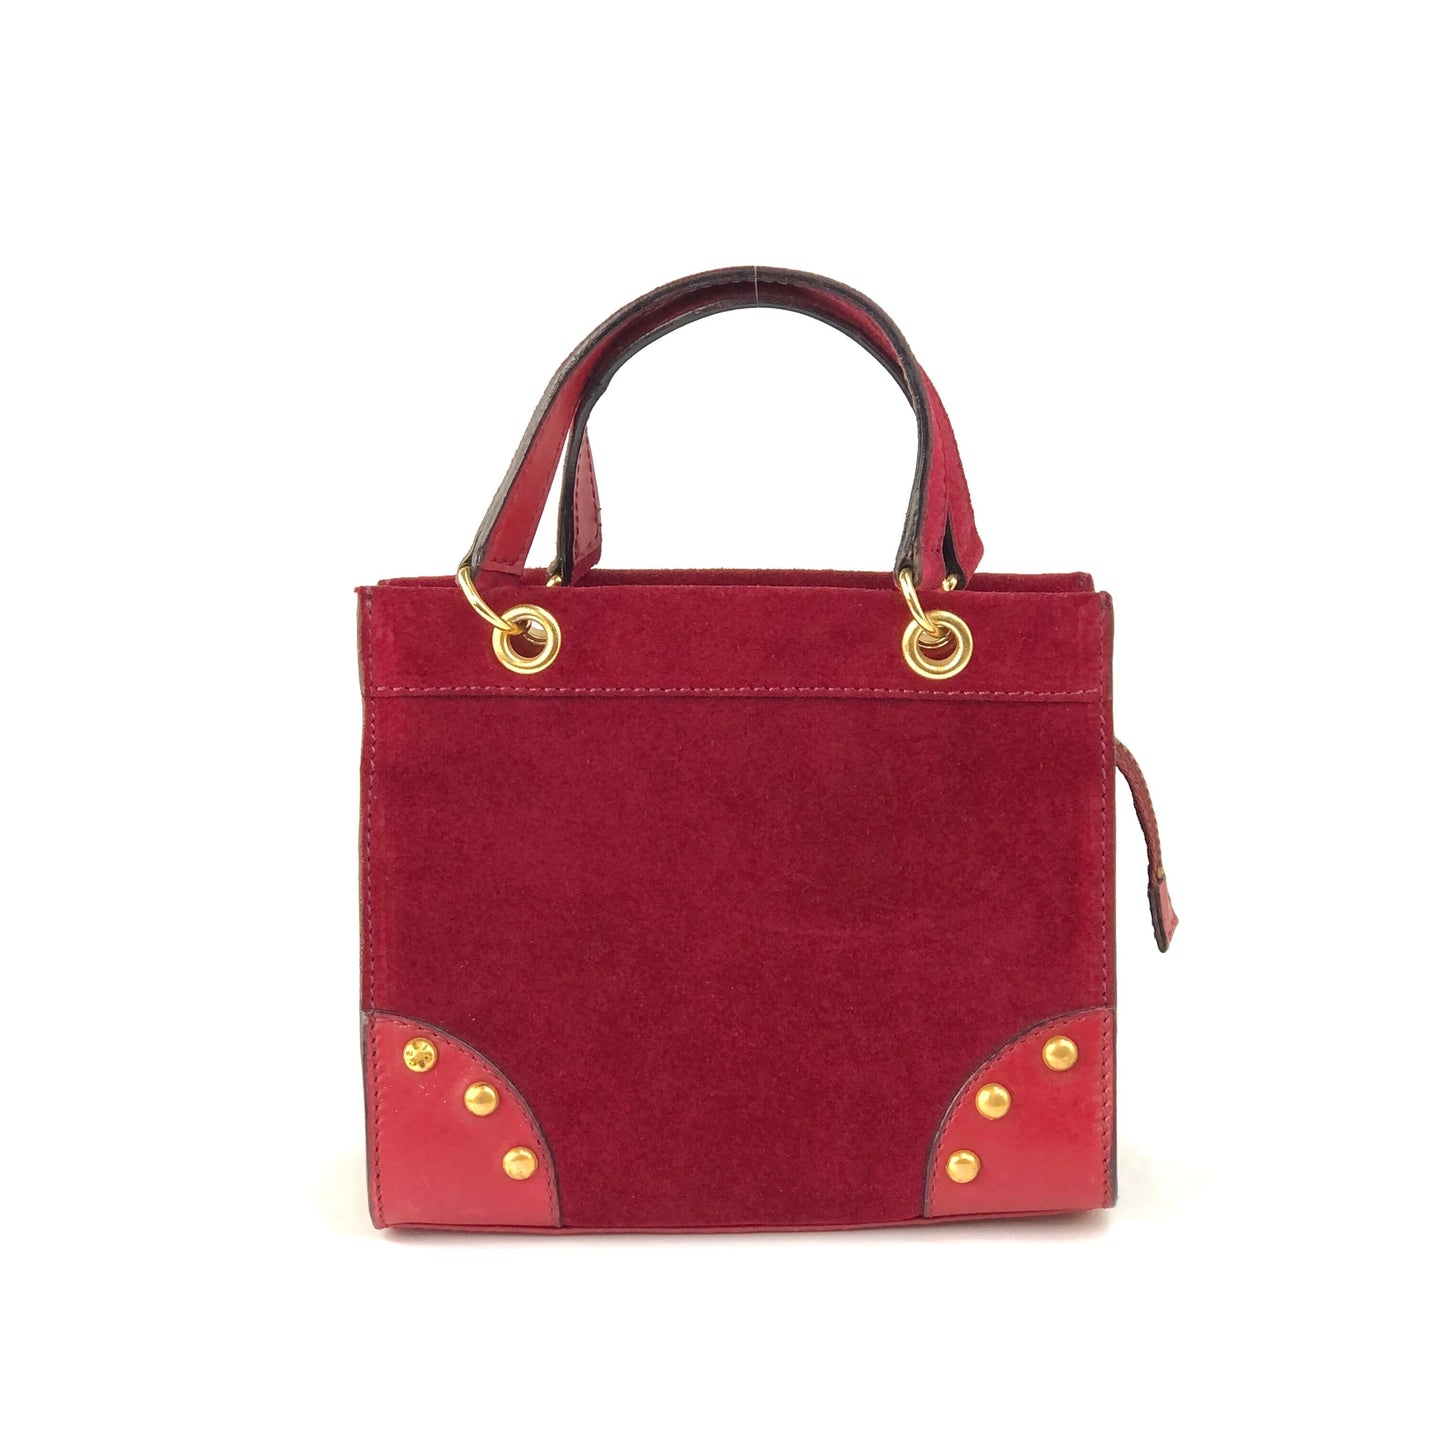 CELINE studs mini bag 2way square suede leather shoulder bag handbag wine red vintage zp7fsi